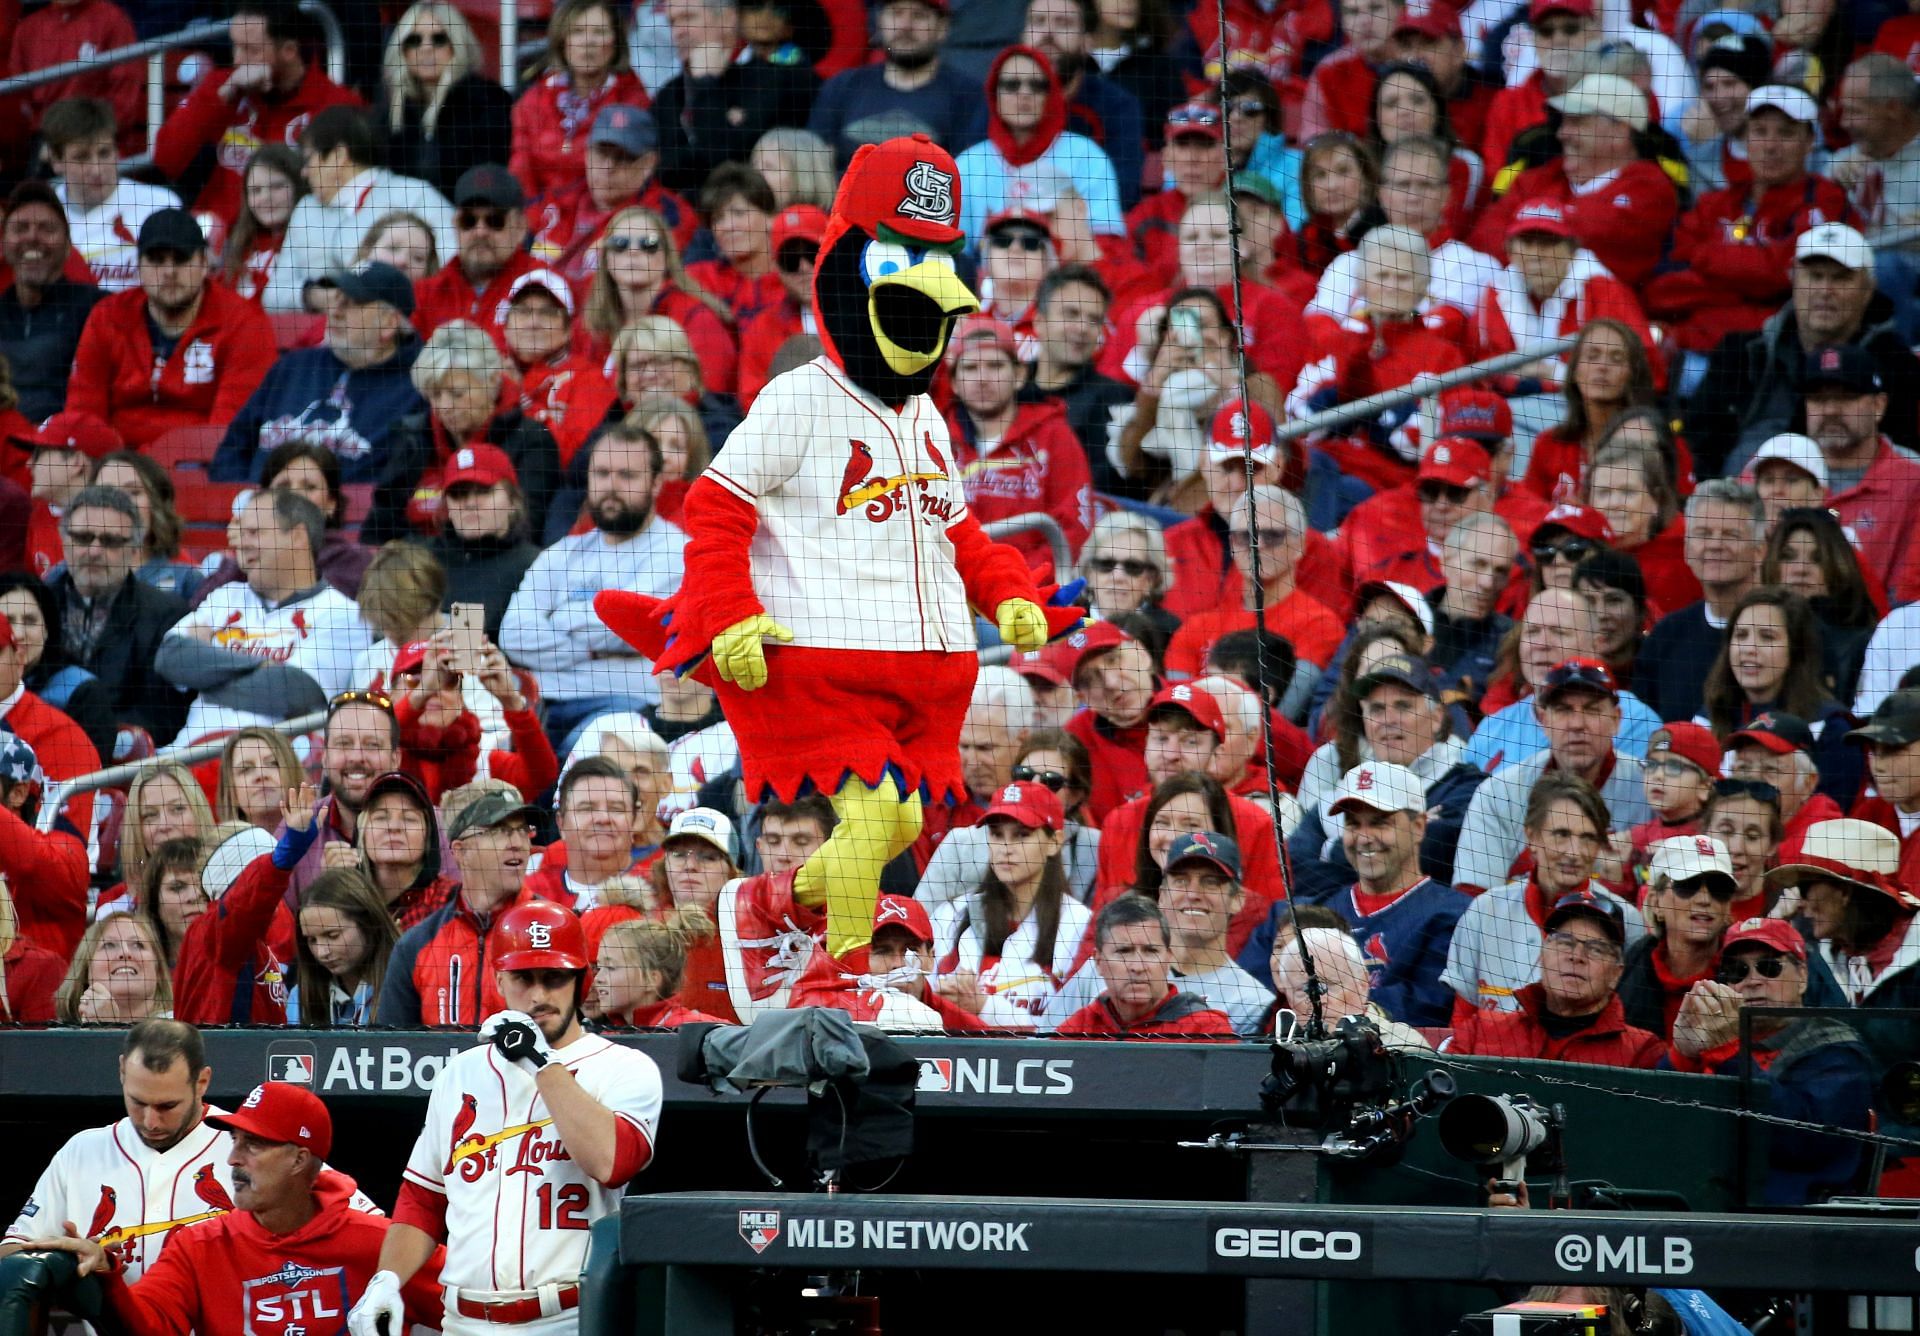 2022 Cardinals home opener: 7 ways to celebrate around Busch Stadium